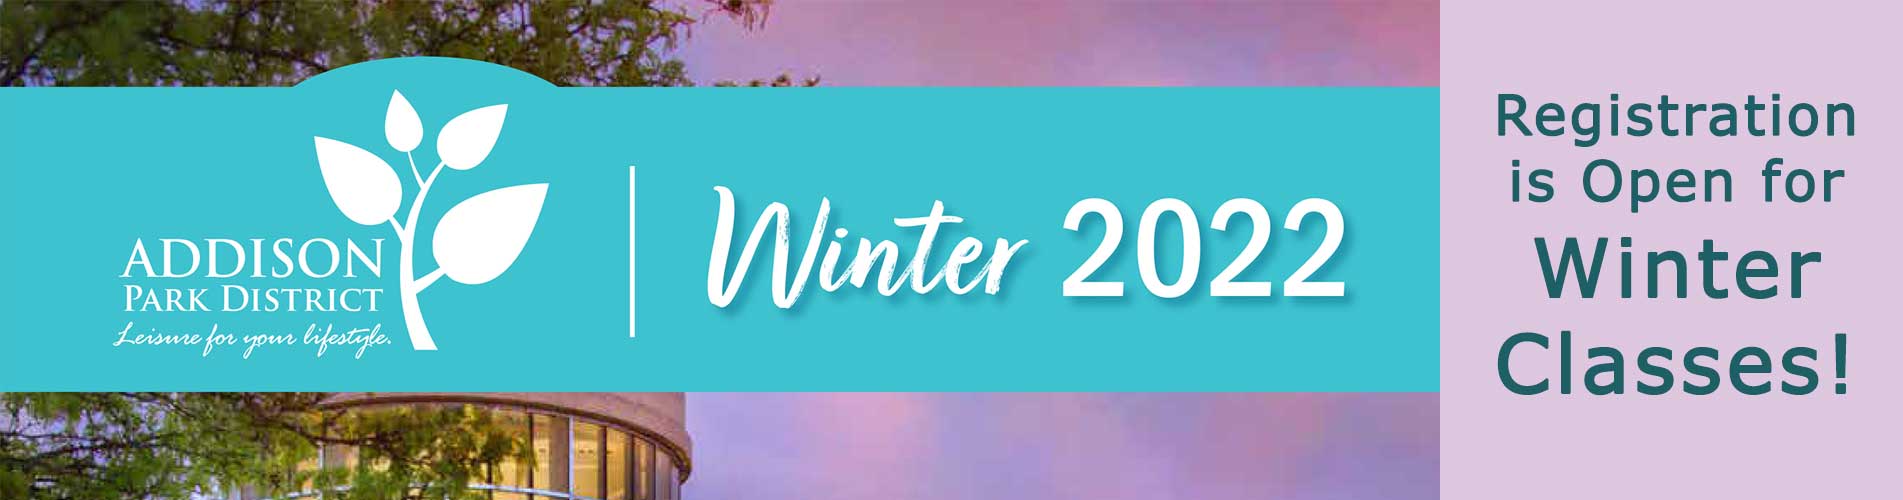 Winter 2022 Registration